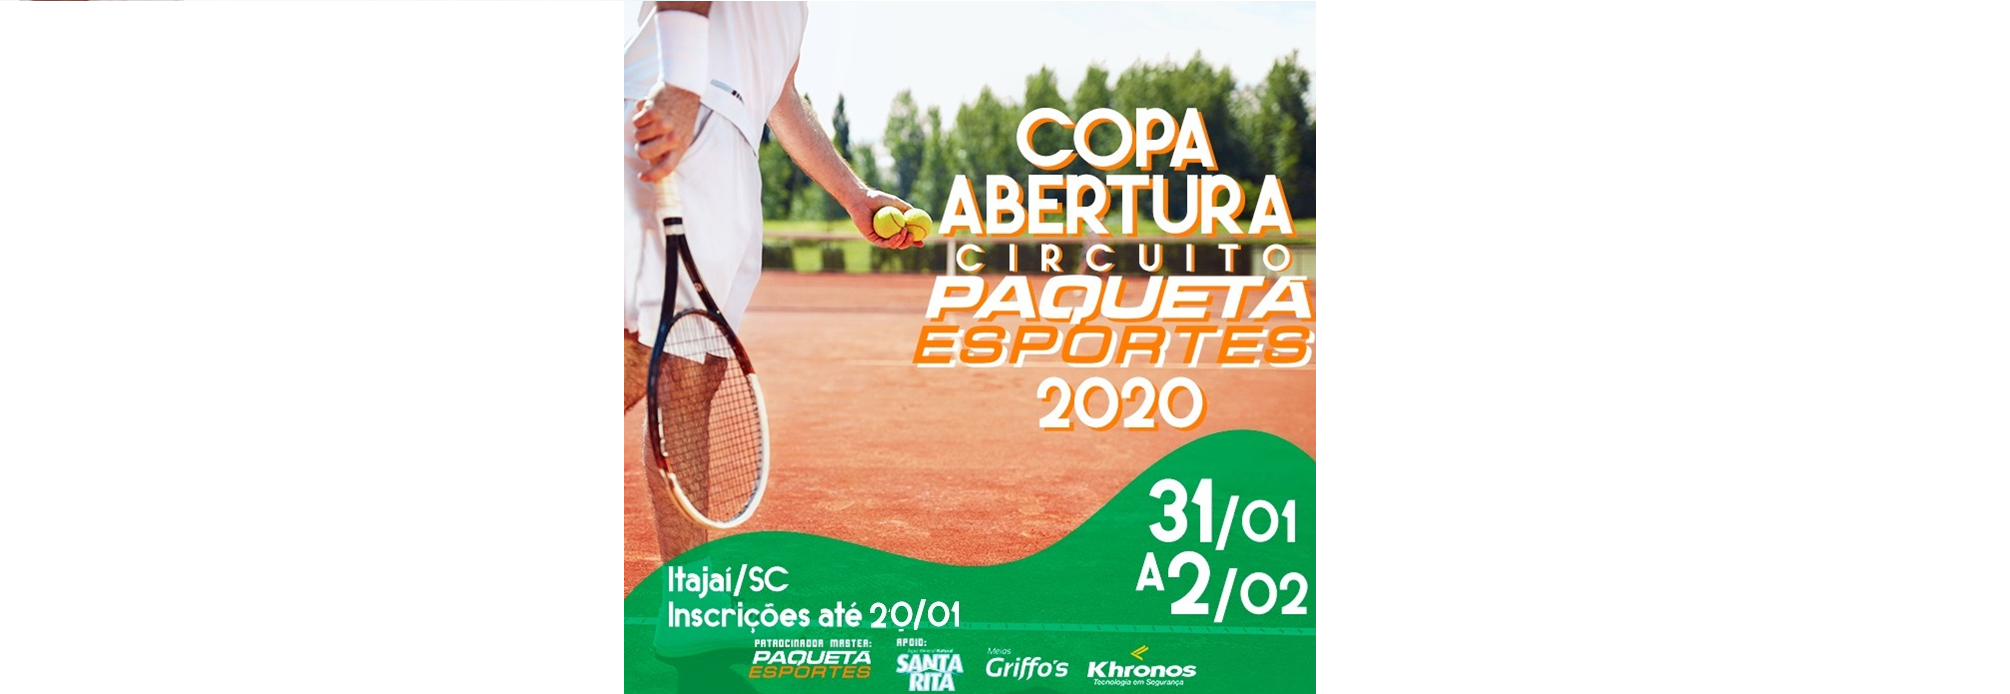 Últimos dias das inscrições para a Copa Abertura Circuito Paquetá Esportes 2020!